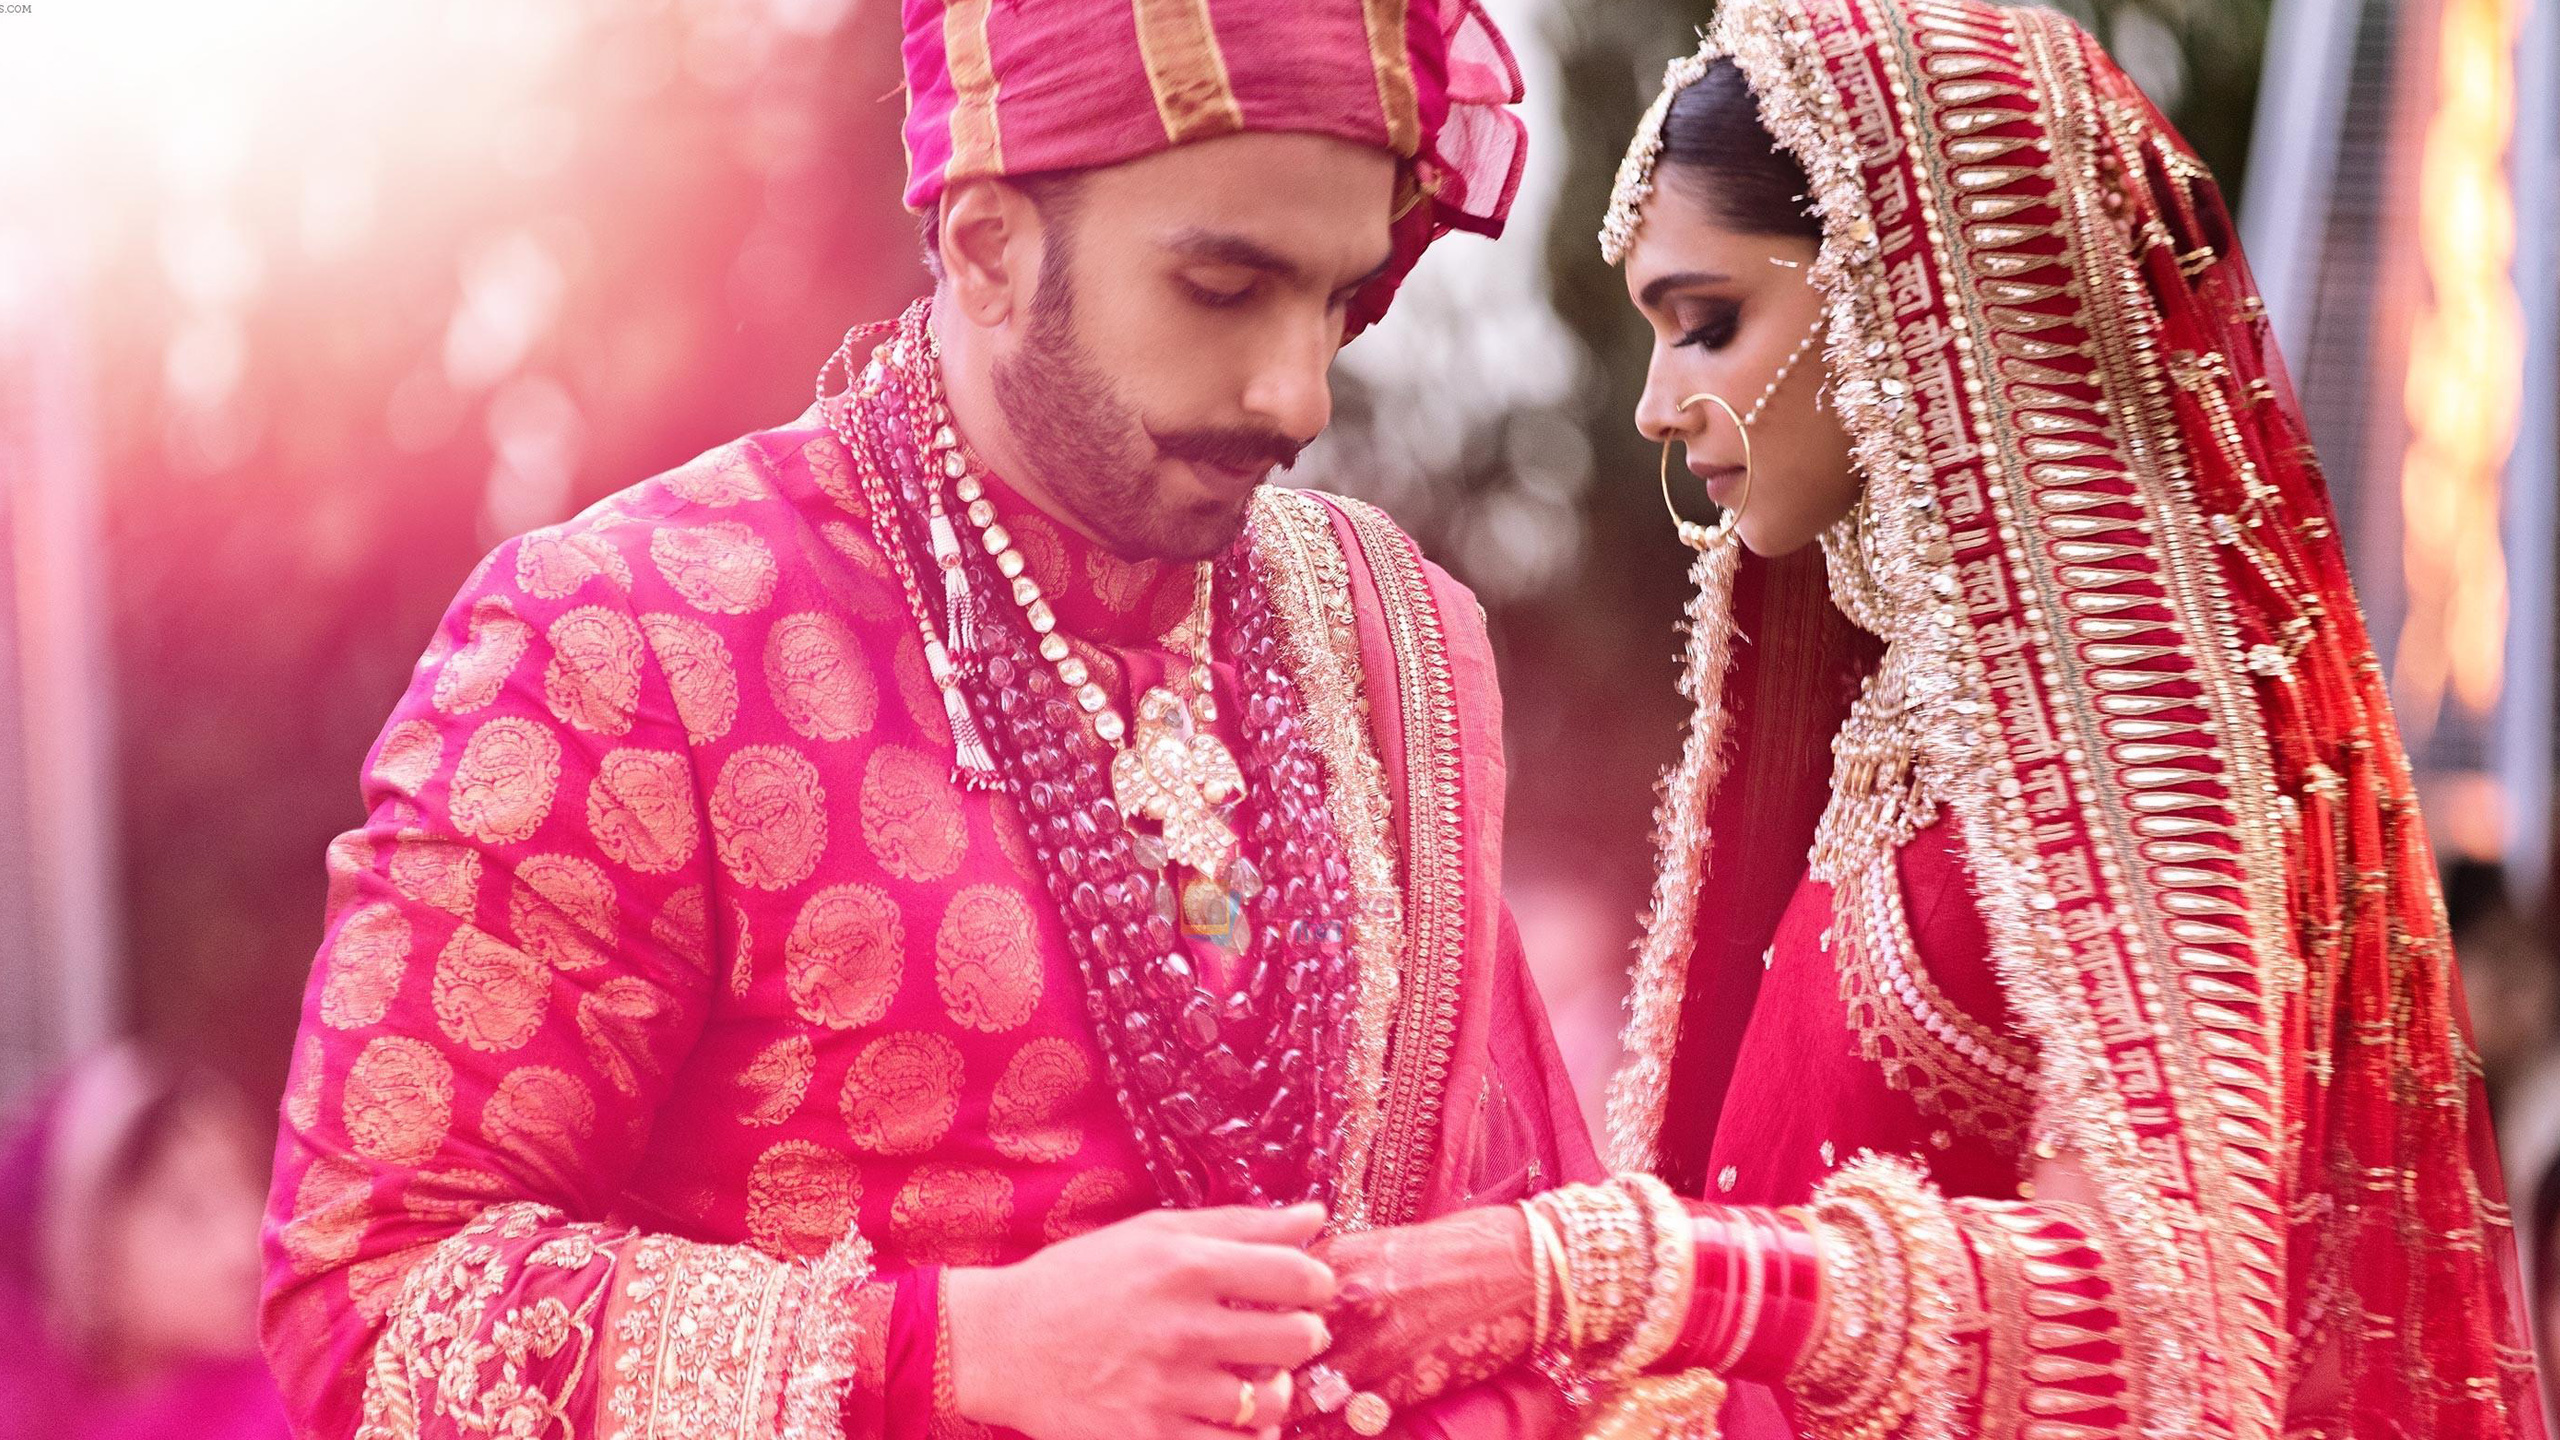 Wedding picture of Deepika Padukone and Ranveer Singh